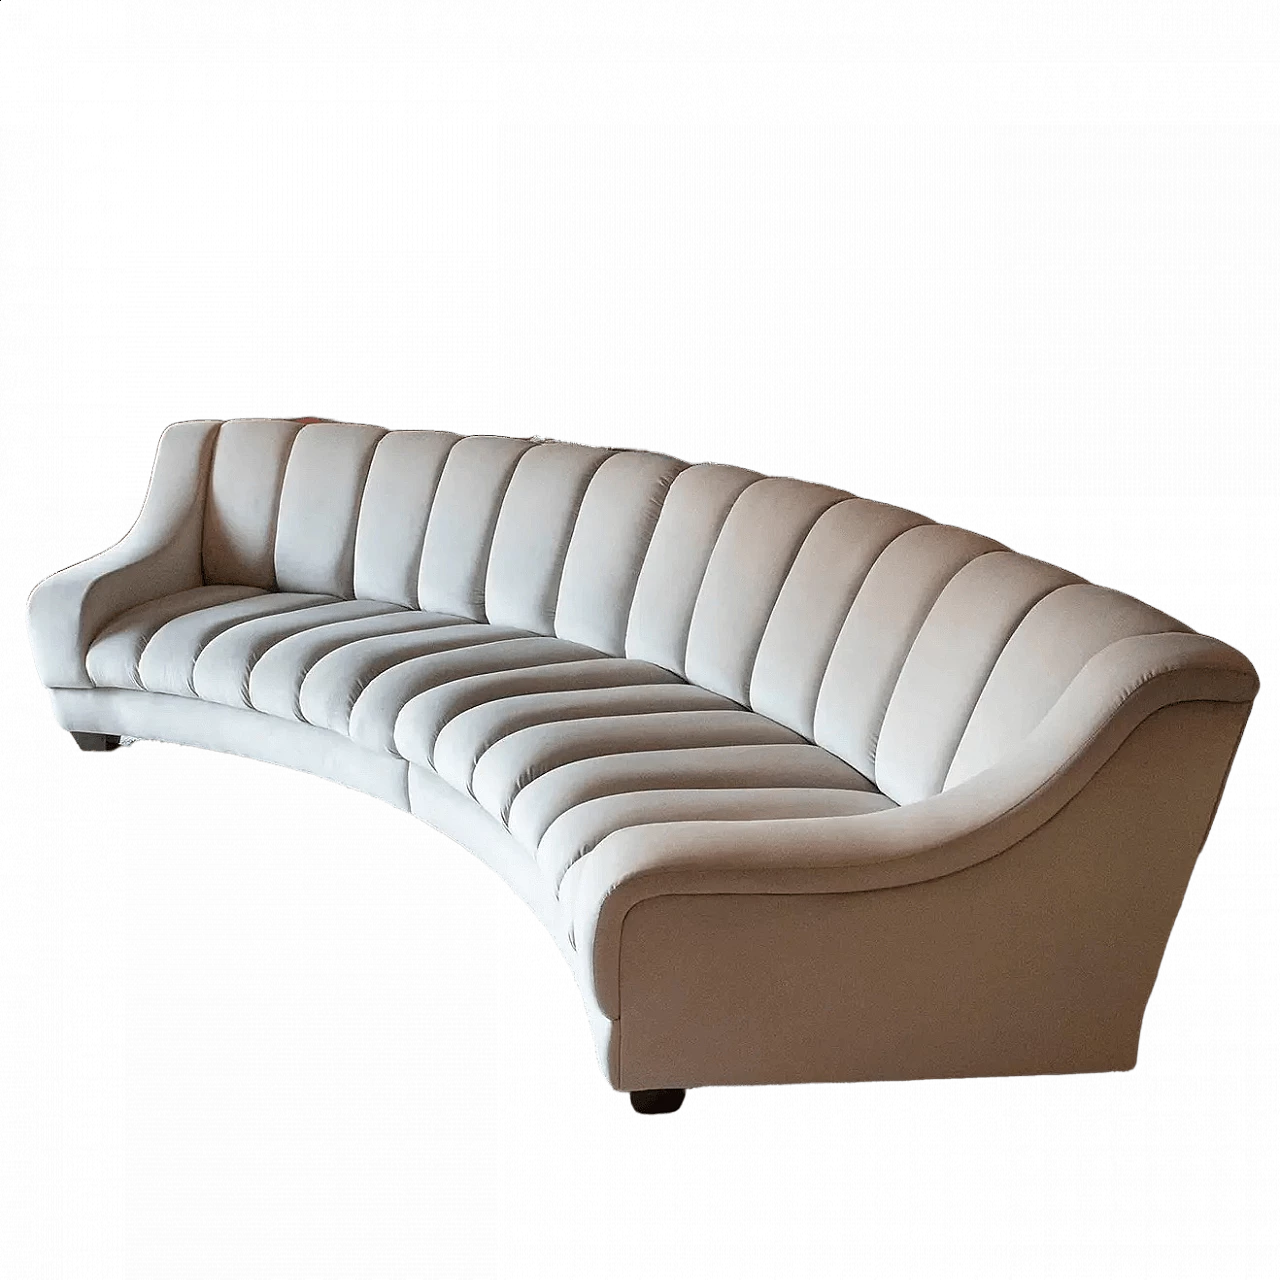 Curved dove grey velvet sofa 6